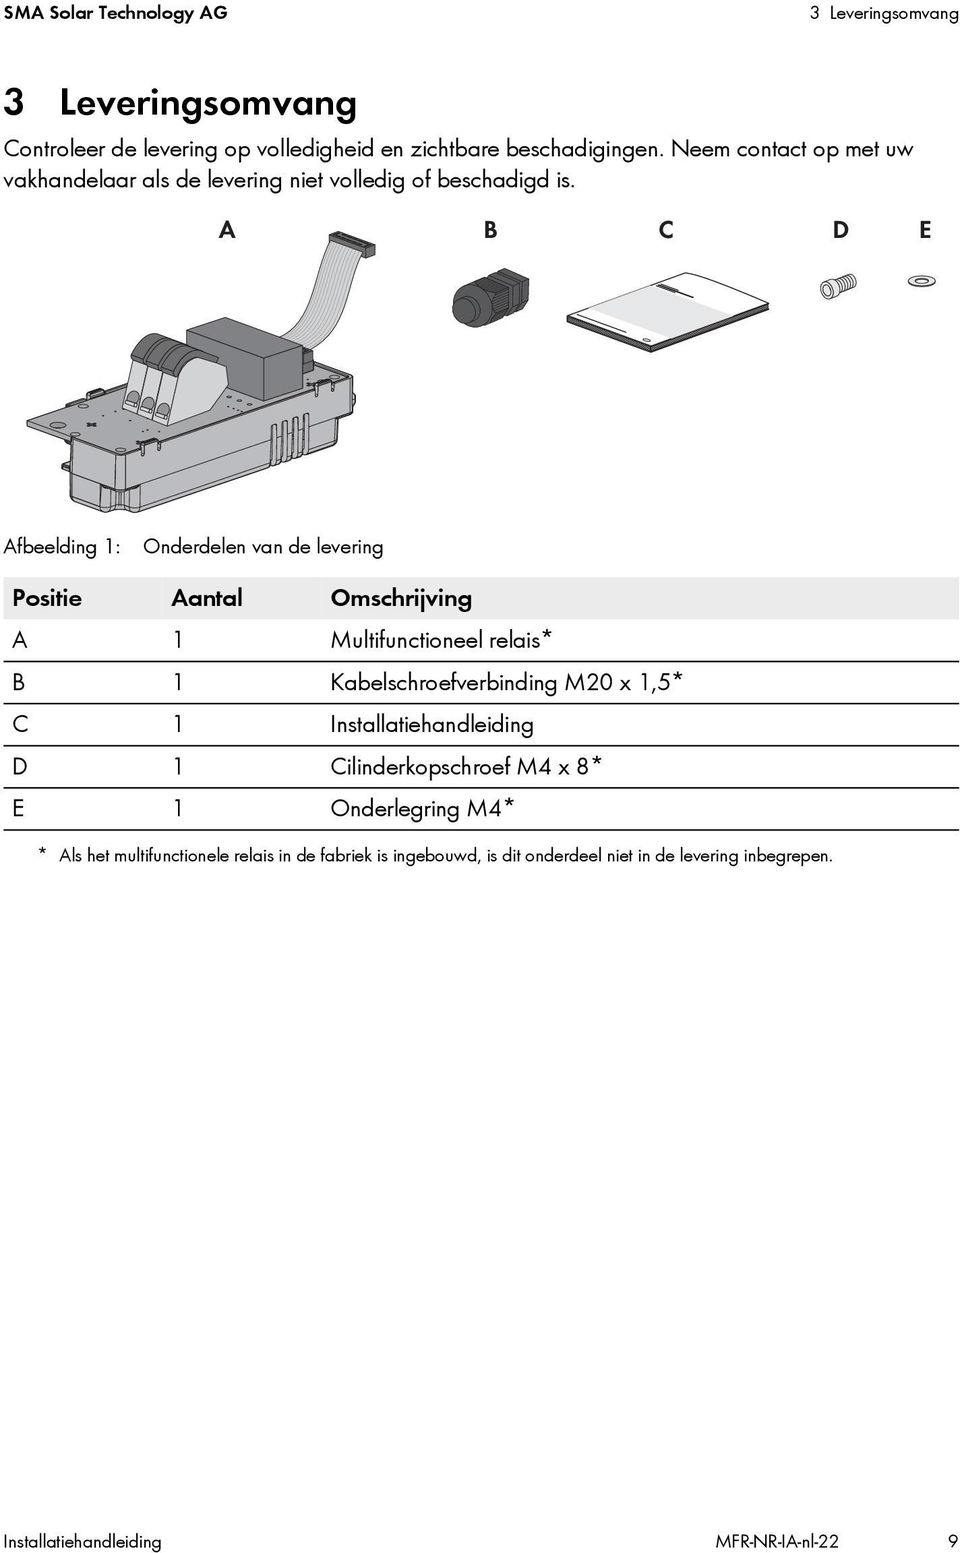 Afbeelding 1: Onderdelen van de levering Positie Aantal Omschrijving A 1 Multifunctioneel relais* B 1 Kabelschroefverbinding M20 x 1,5* C 1